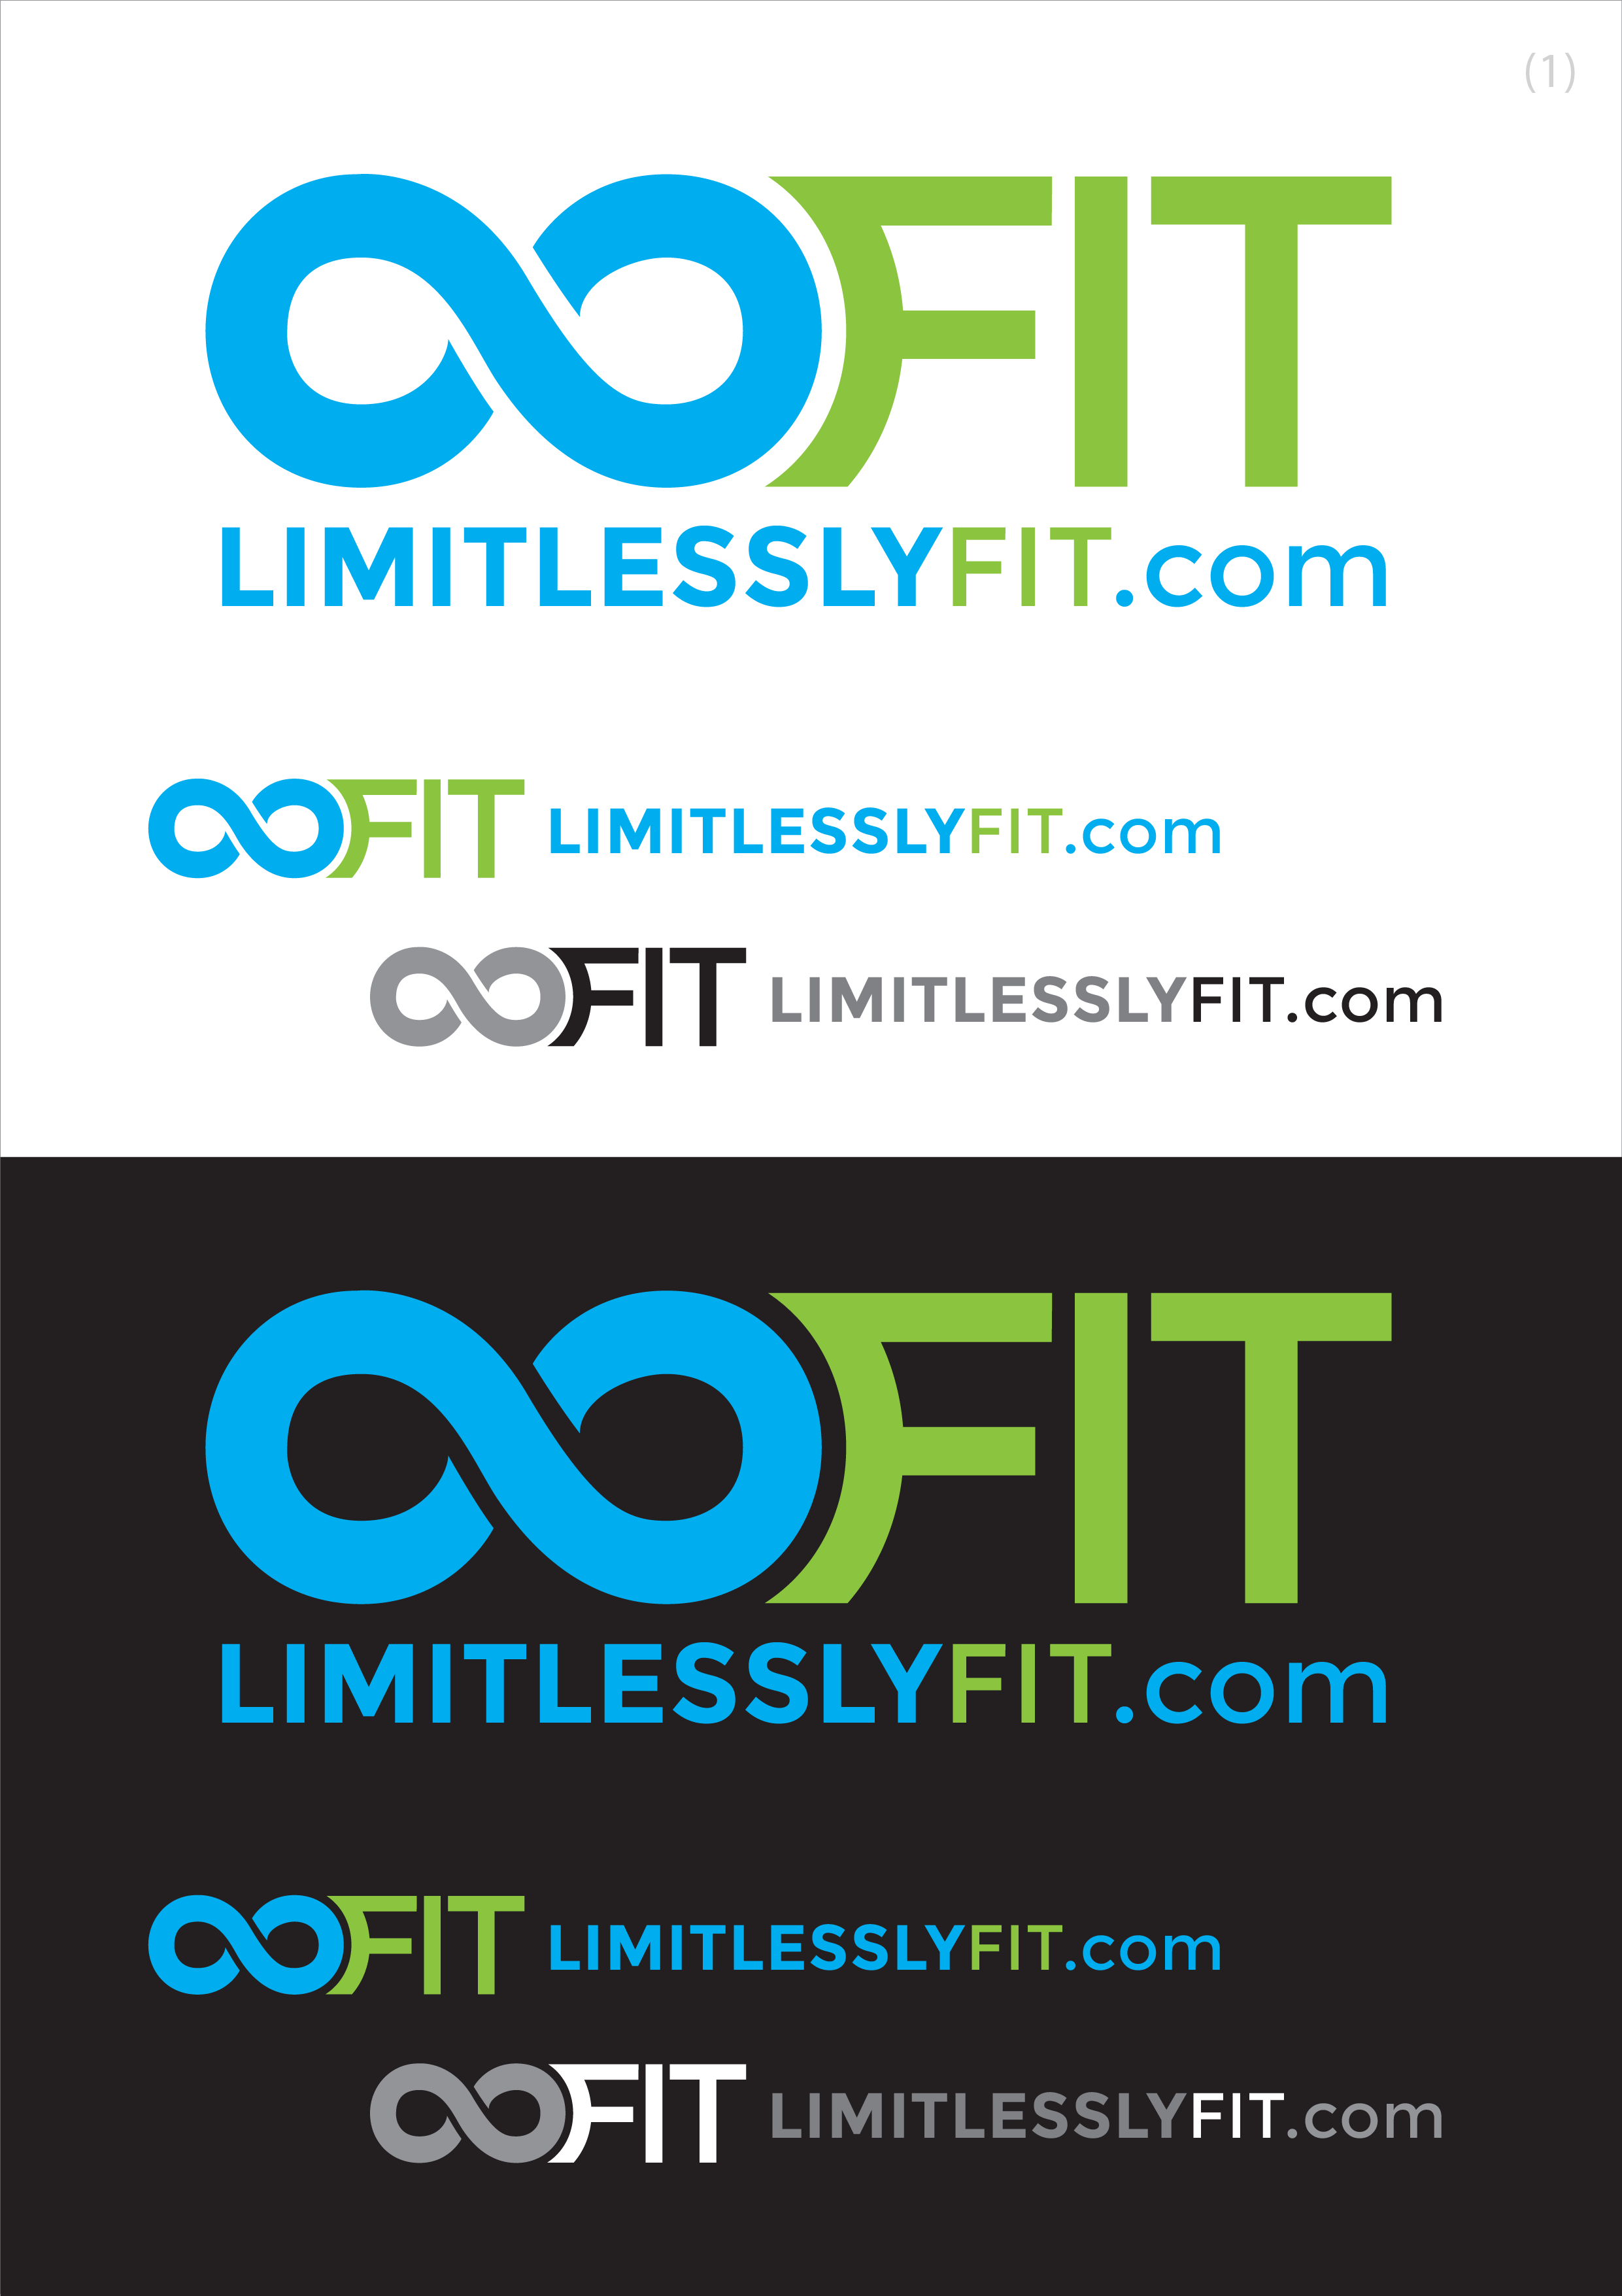 LimitlesslyFit logo1.png